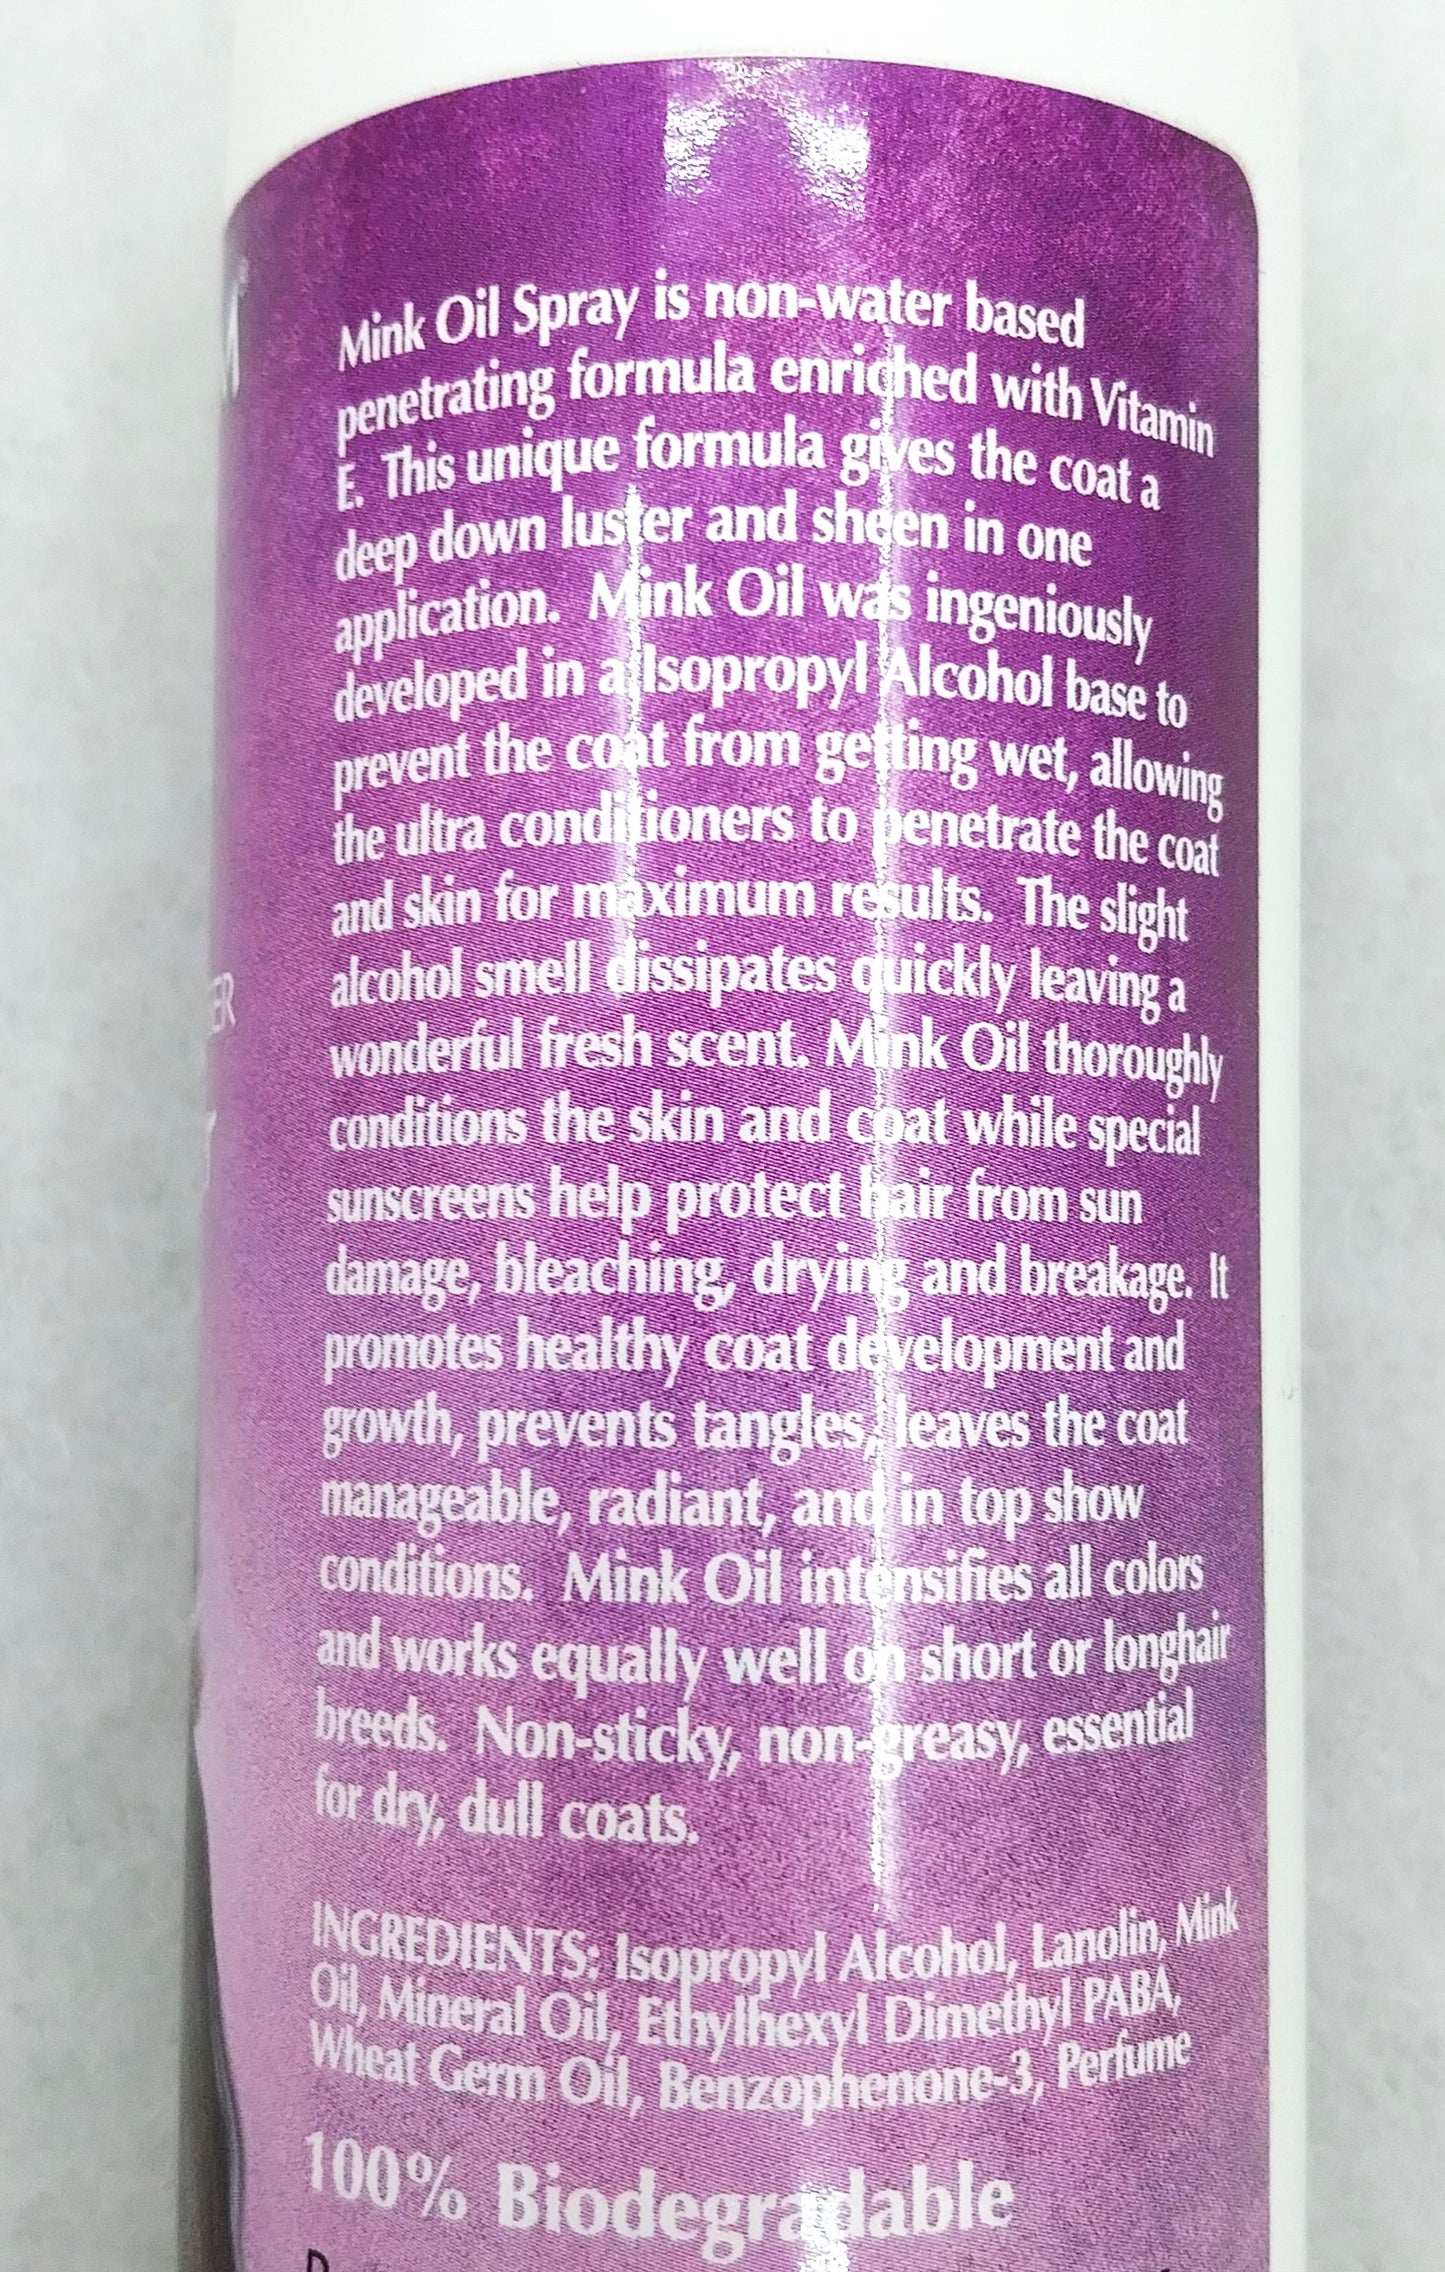 Bio Groom Mink Oil Conditioner - Sofortiger Glanz und Sonnenschutz, Nerzöl Spray-Conditioner, 355 ml